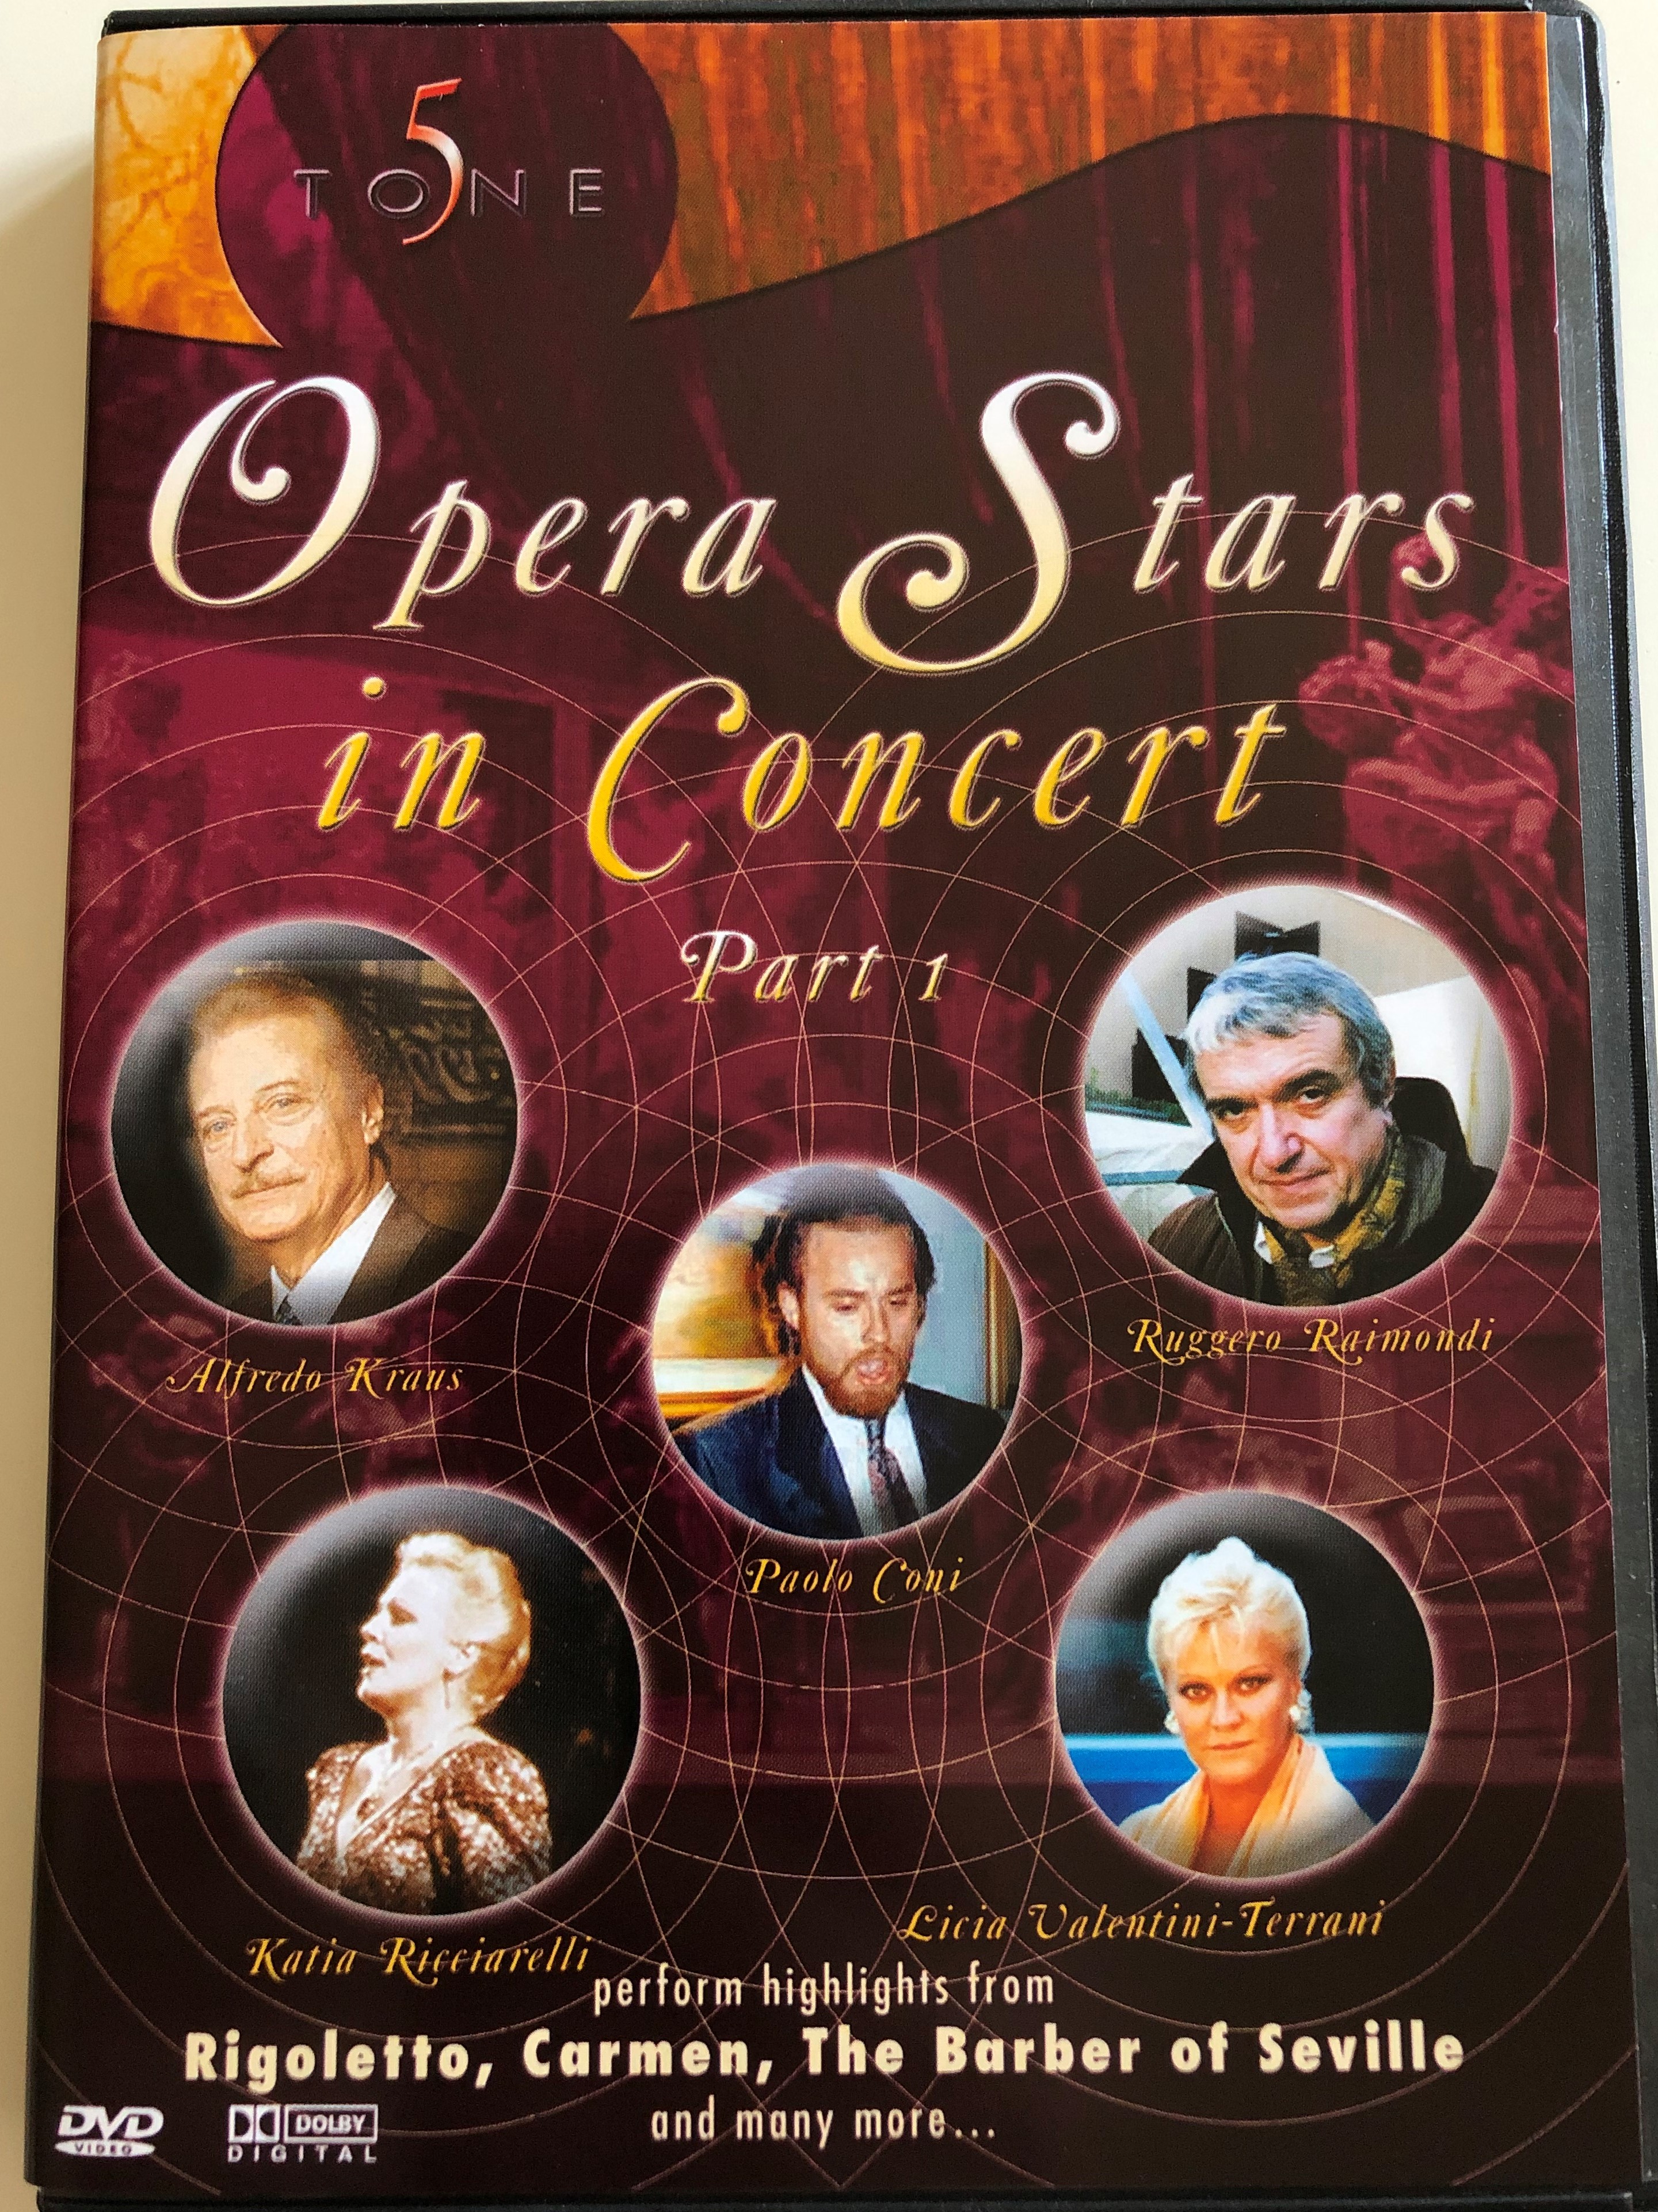 opera-stars-in-concert-part-1-symphonic-orchestra-of-madrid-conducted-by-gian-paolo-sanzagno-alfredo-kraus-paolo-coni-ruggero-raimondi-katia-ricciarelli-licia-valentini-terrani-perform-highlights-from-rigoletto-carme-1-.jpg